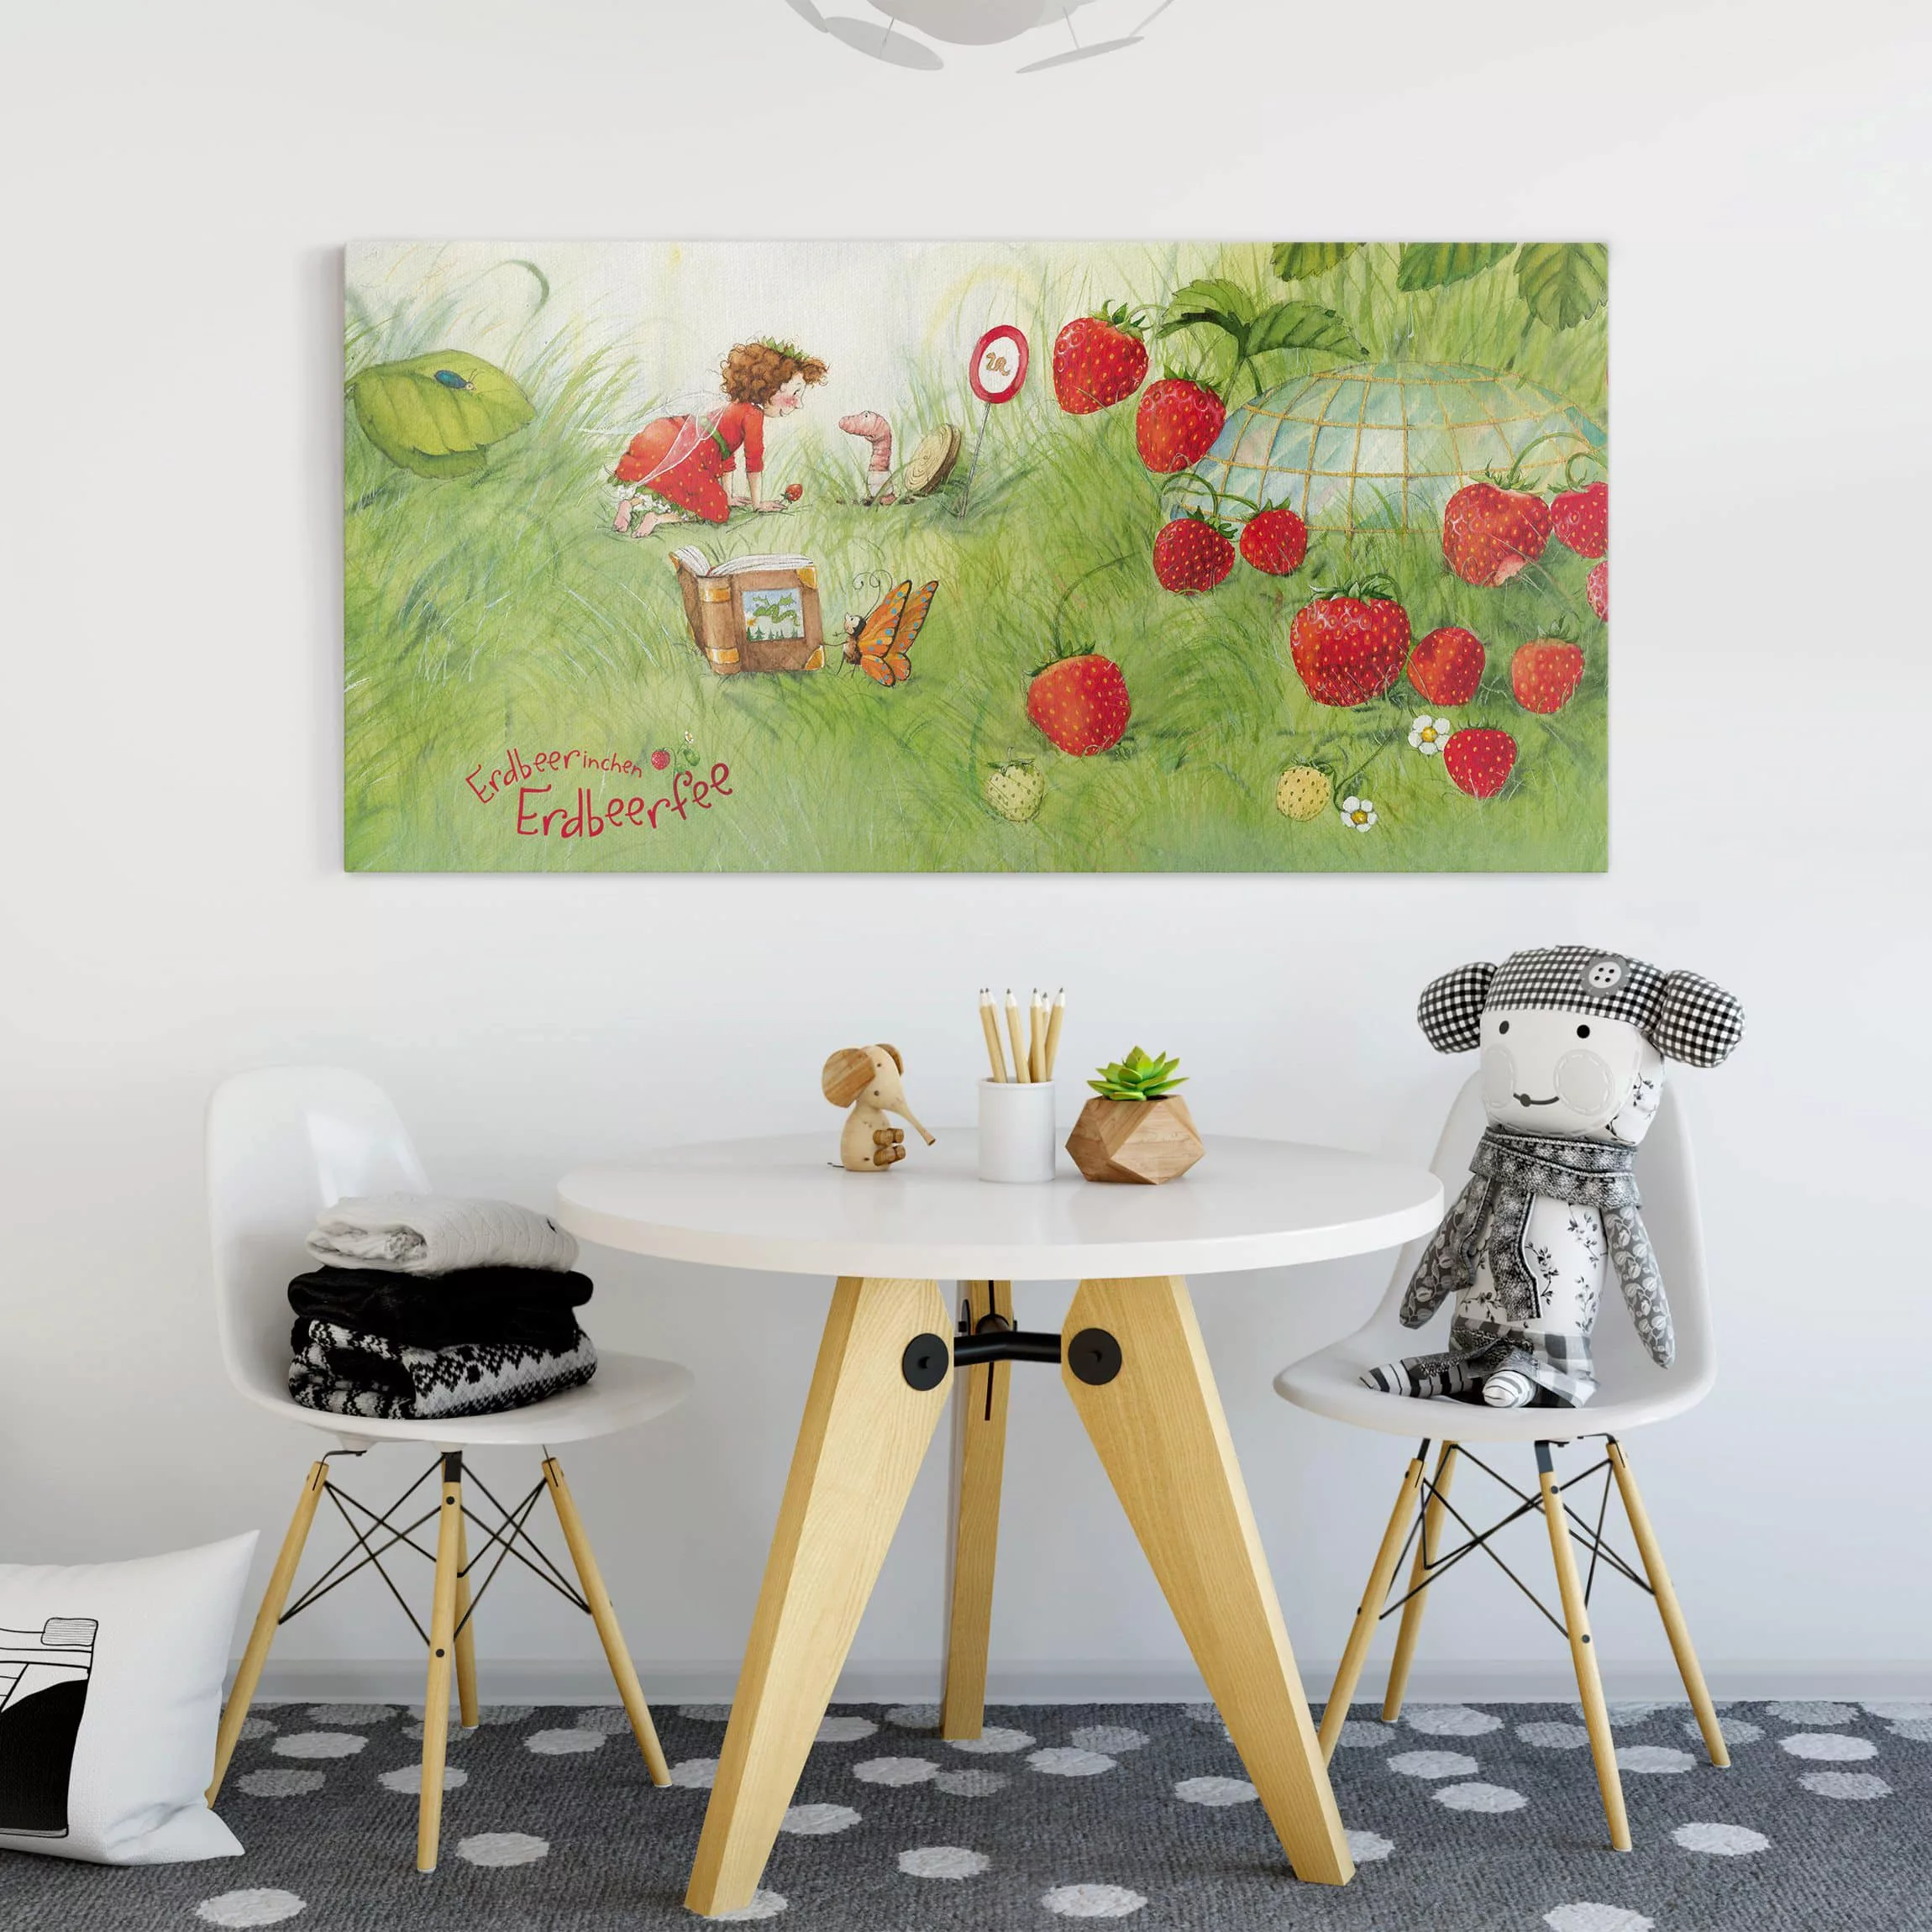 Leinwandbild Kinderzimmer - Querformat Erdbeerinchen Erdbeerfee - Bei Wurm günstig online kaufen